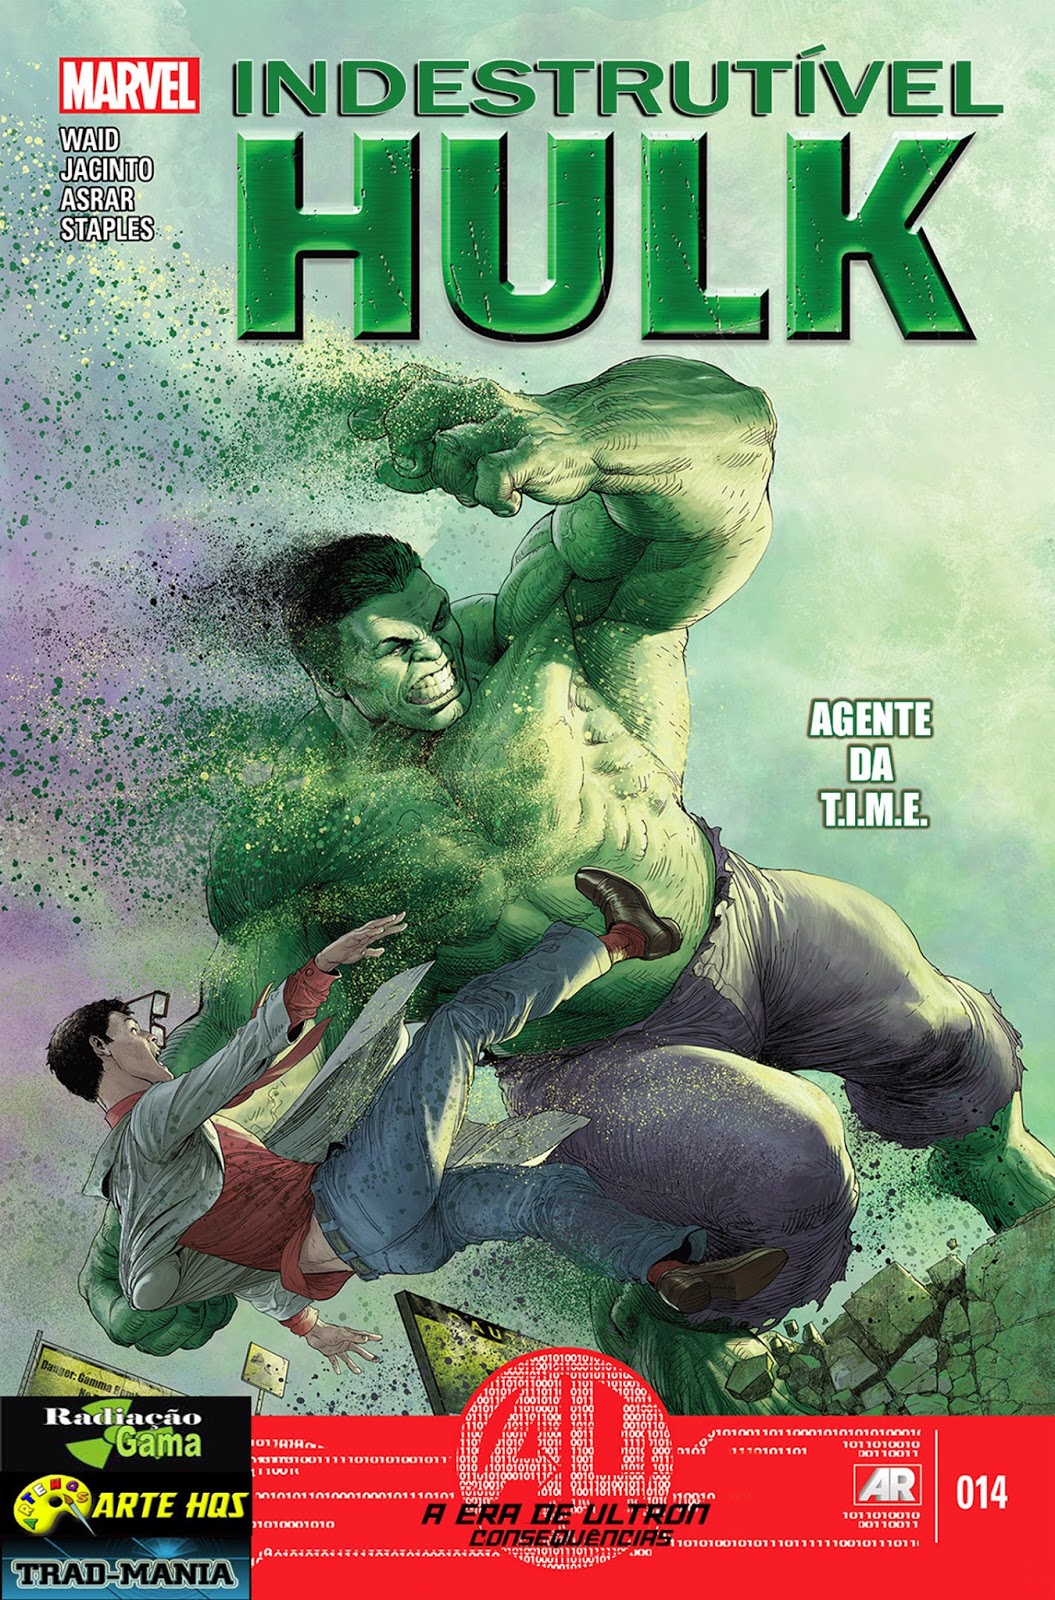 Nova Marvel! O Indestrutível Hulk - Agente do T.I.M.E #14